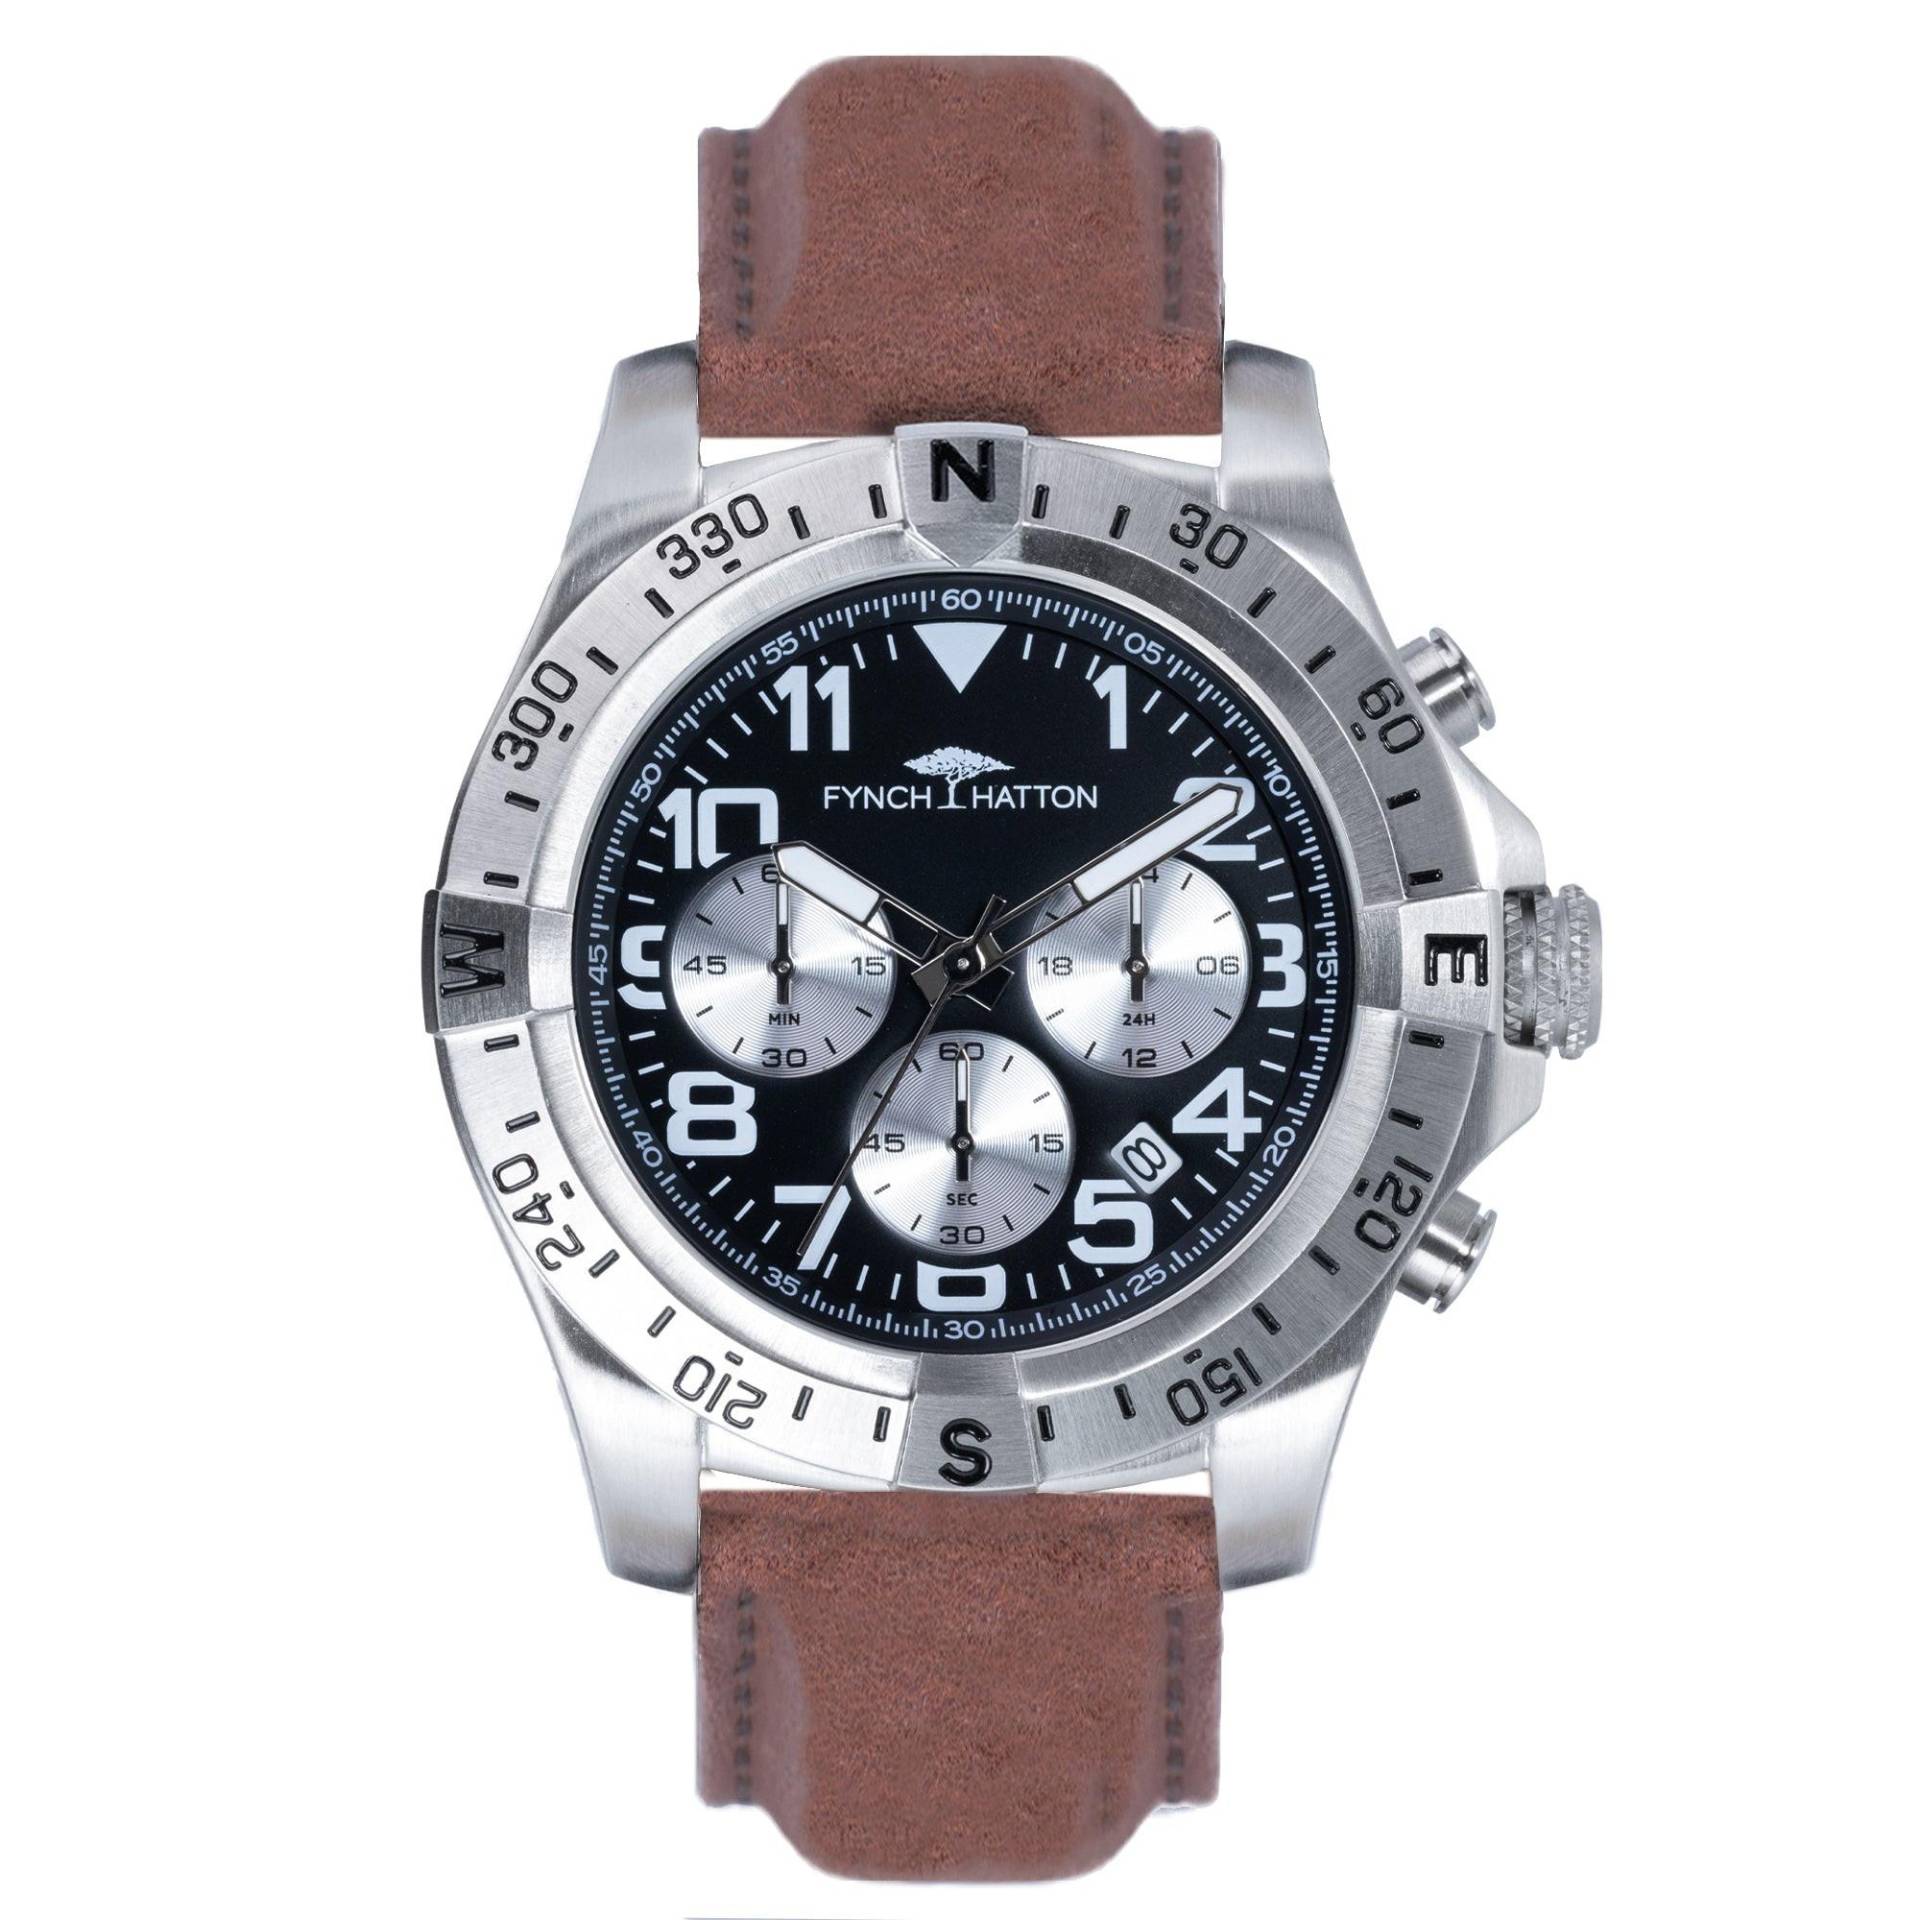 Strong Armbanduhr Herren Braun 45mm von Fynch-Hatton